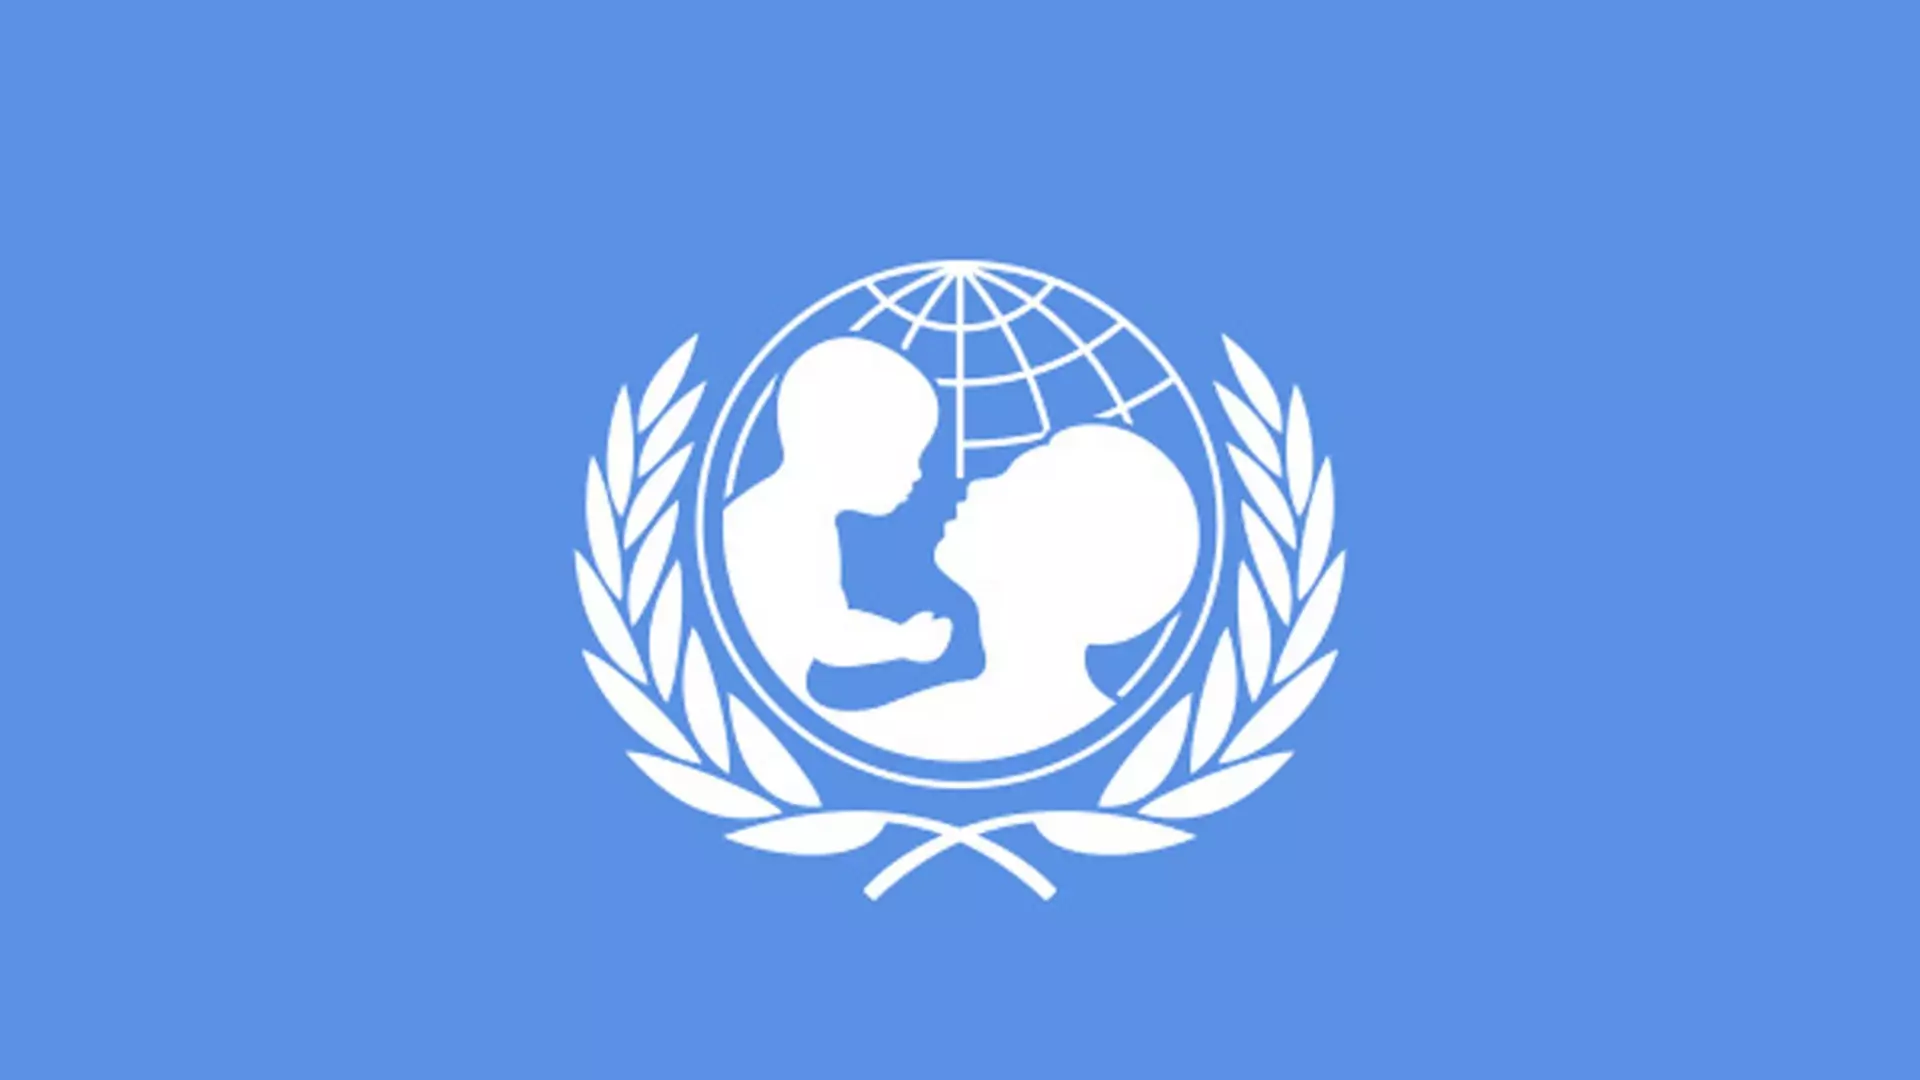 Oświadczenie Catherine Russell, Dyrektor Generalnej UNICEF, na temat sytuacji dzieci w Ukrainie